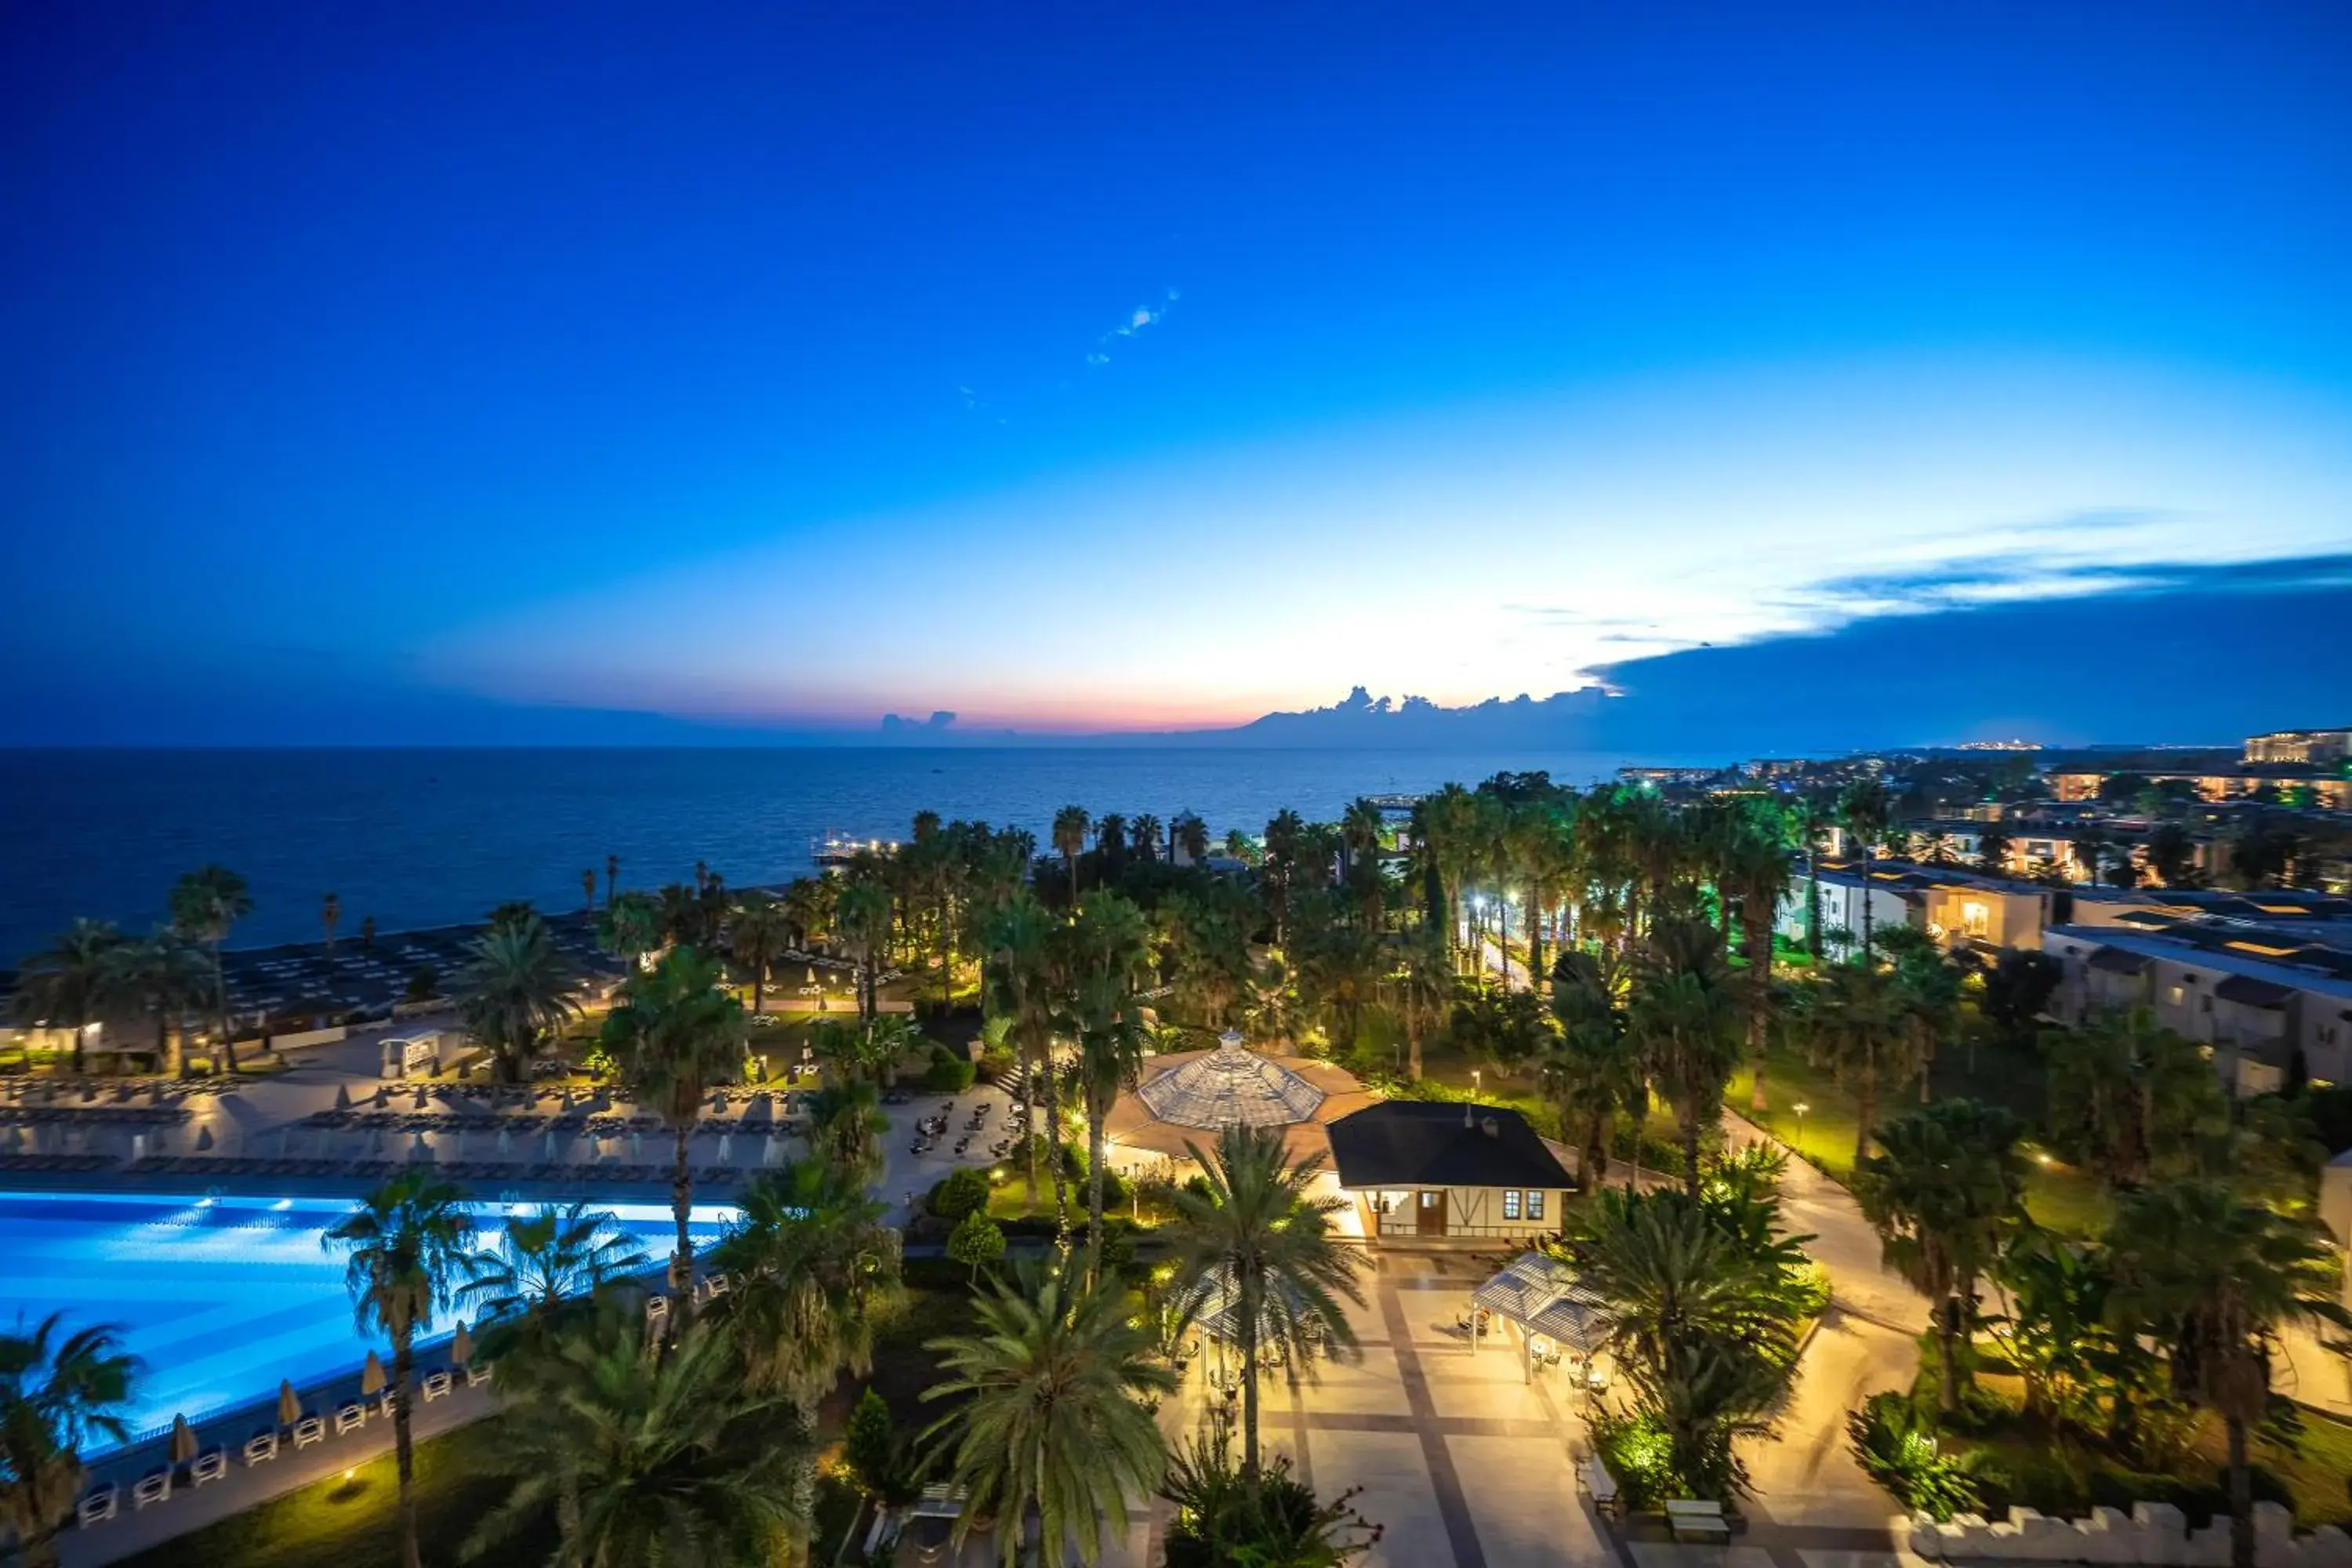 Night, Bird's-eye View in Adora Golf Resort Hotel